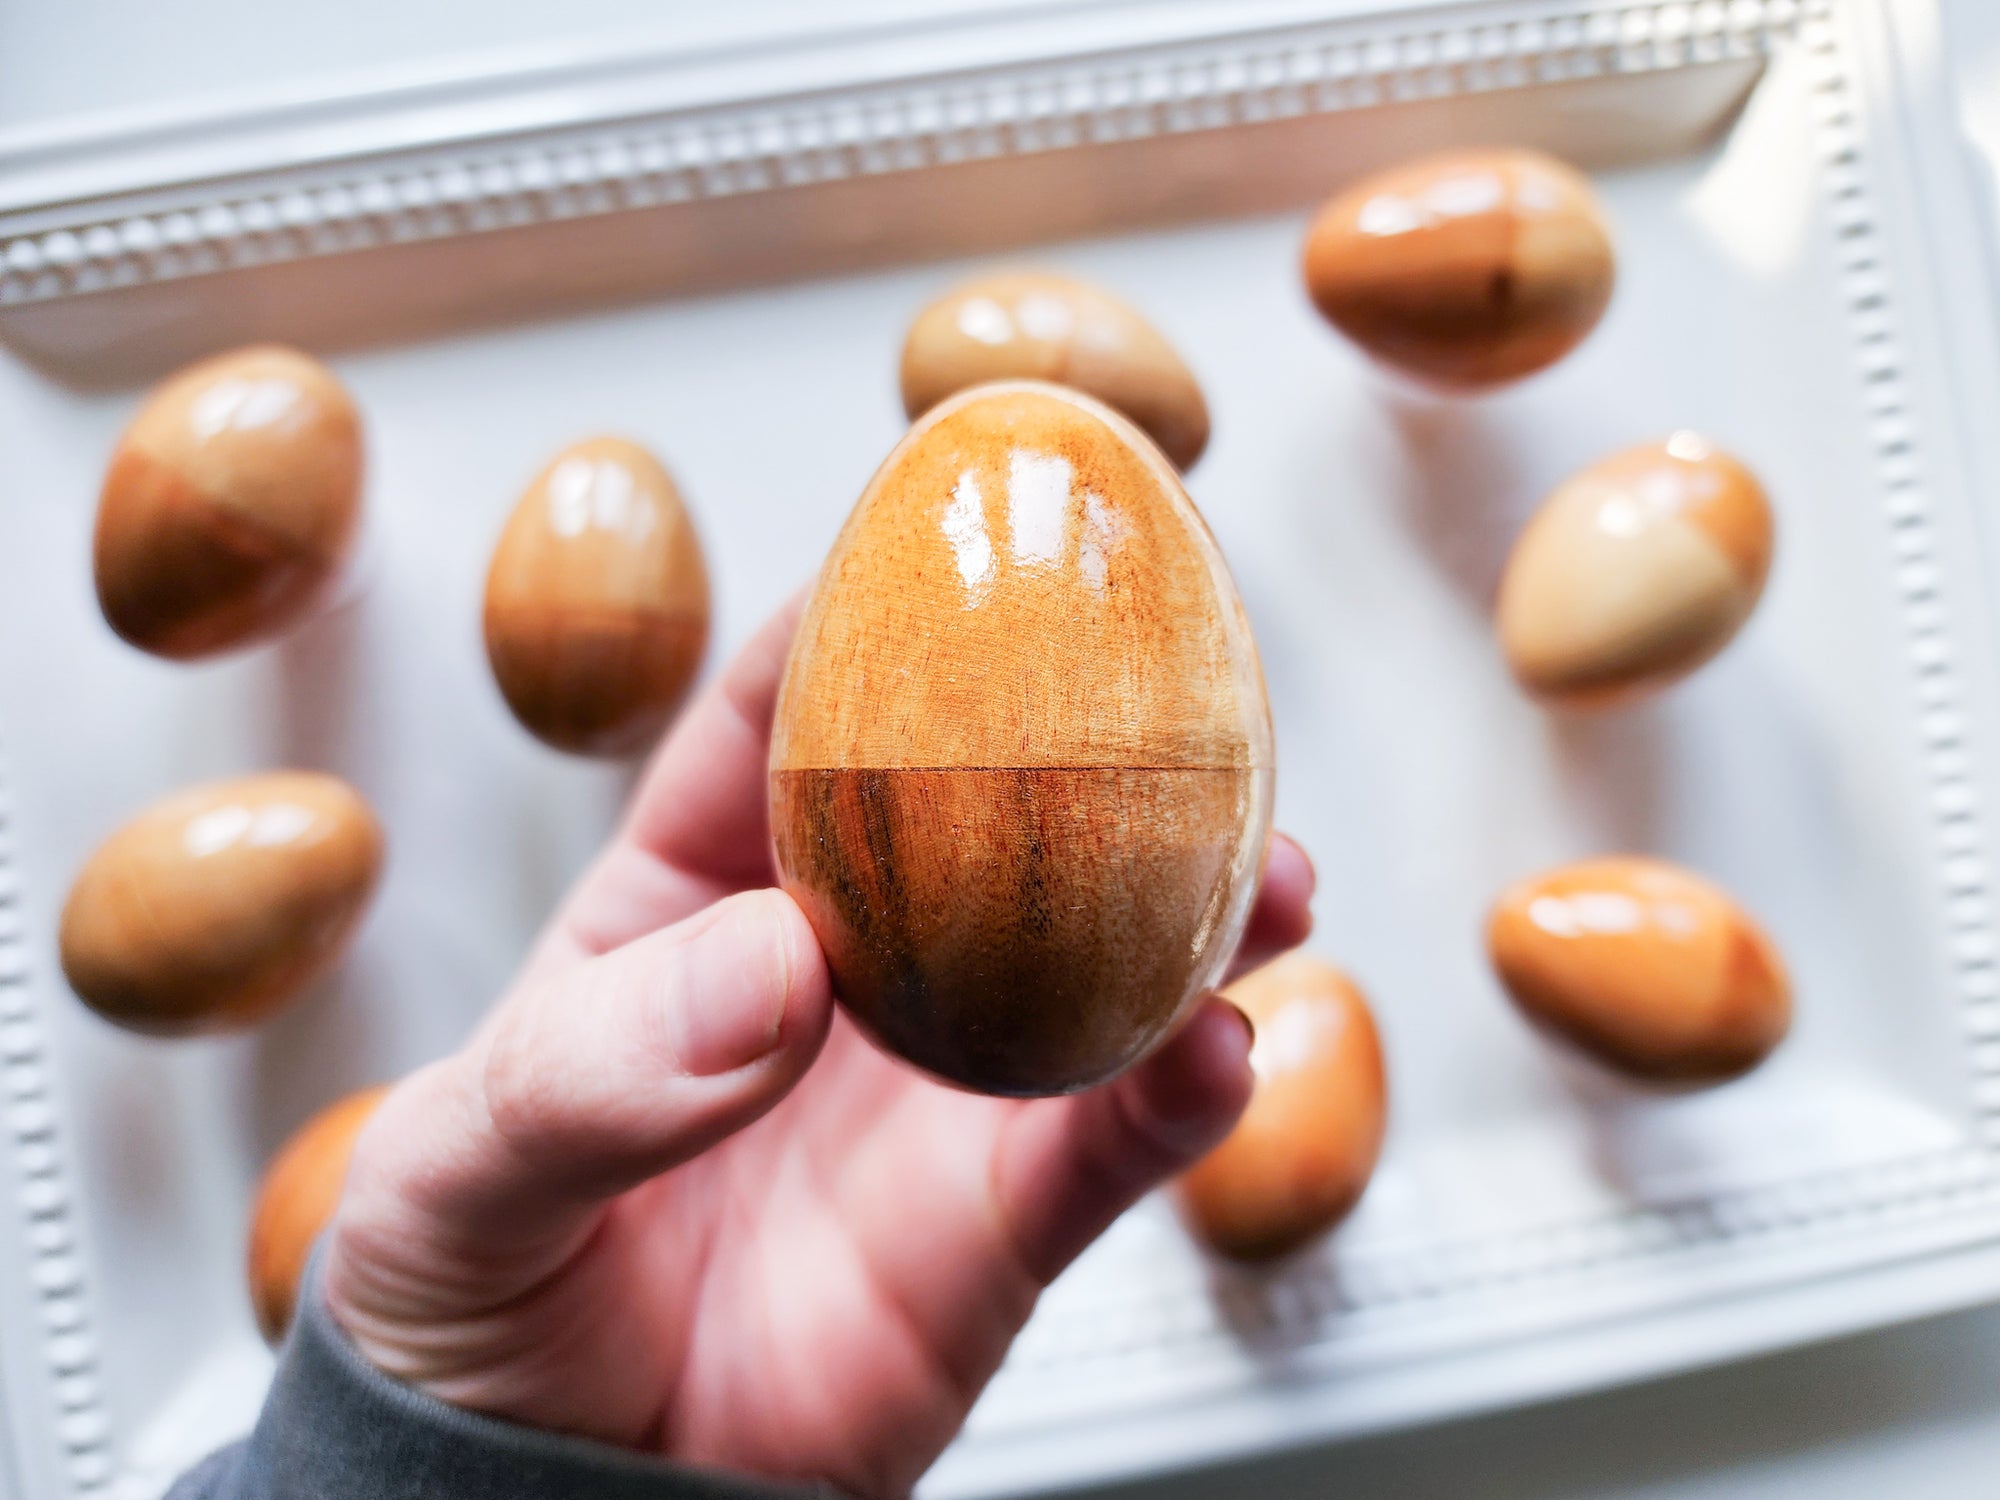 Wooden Egg Shaker